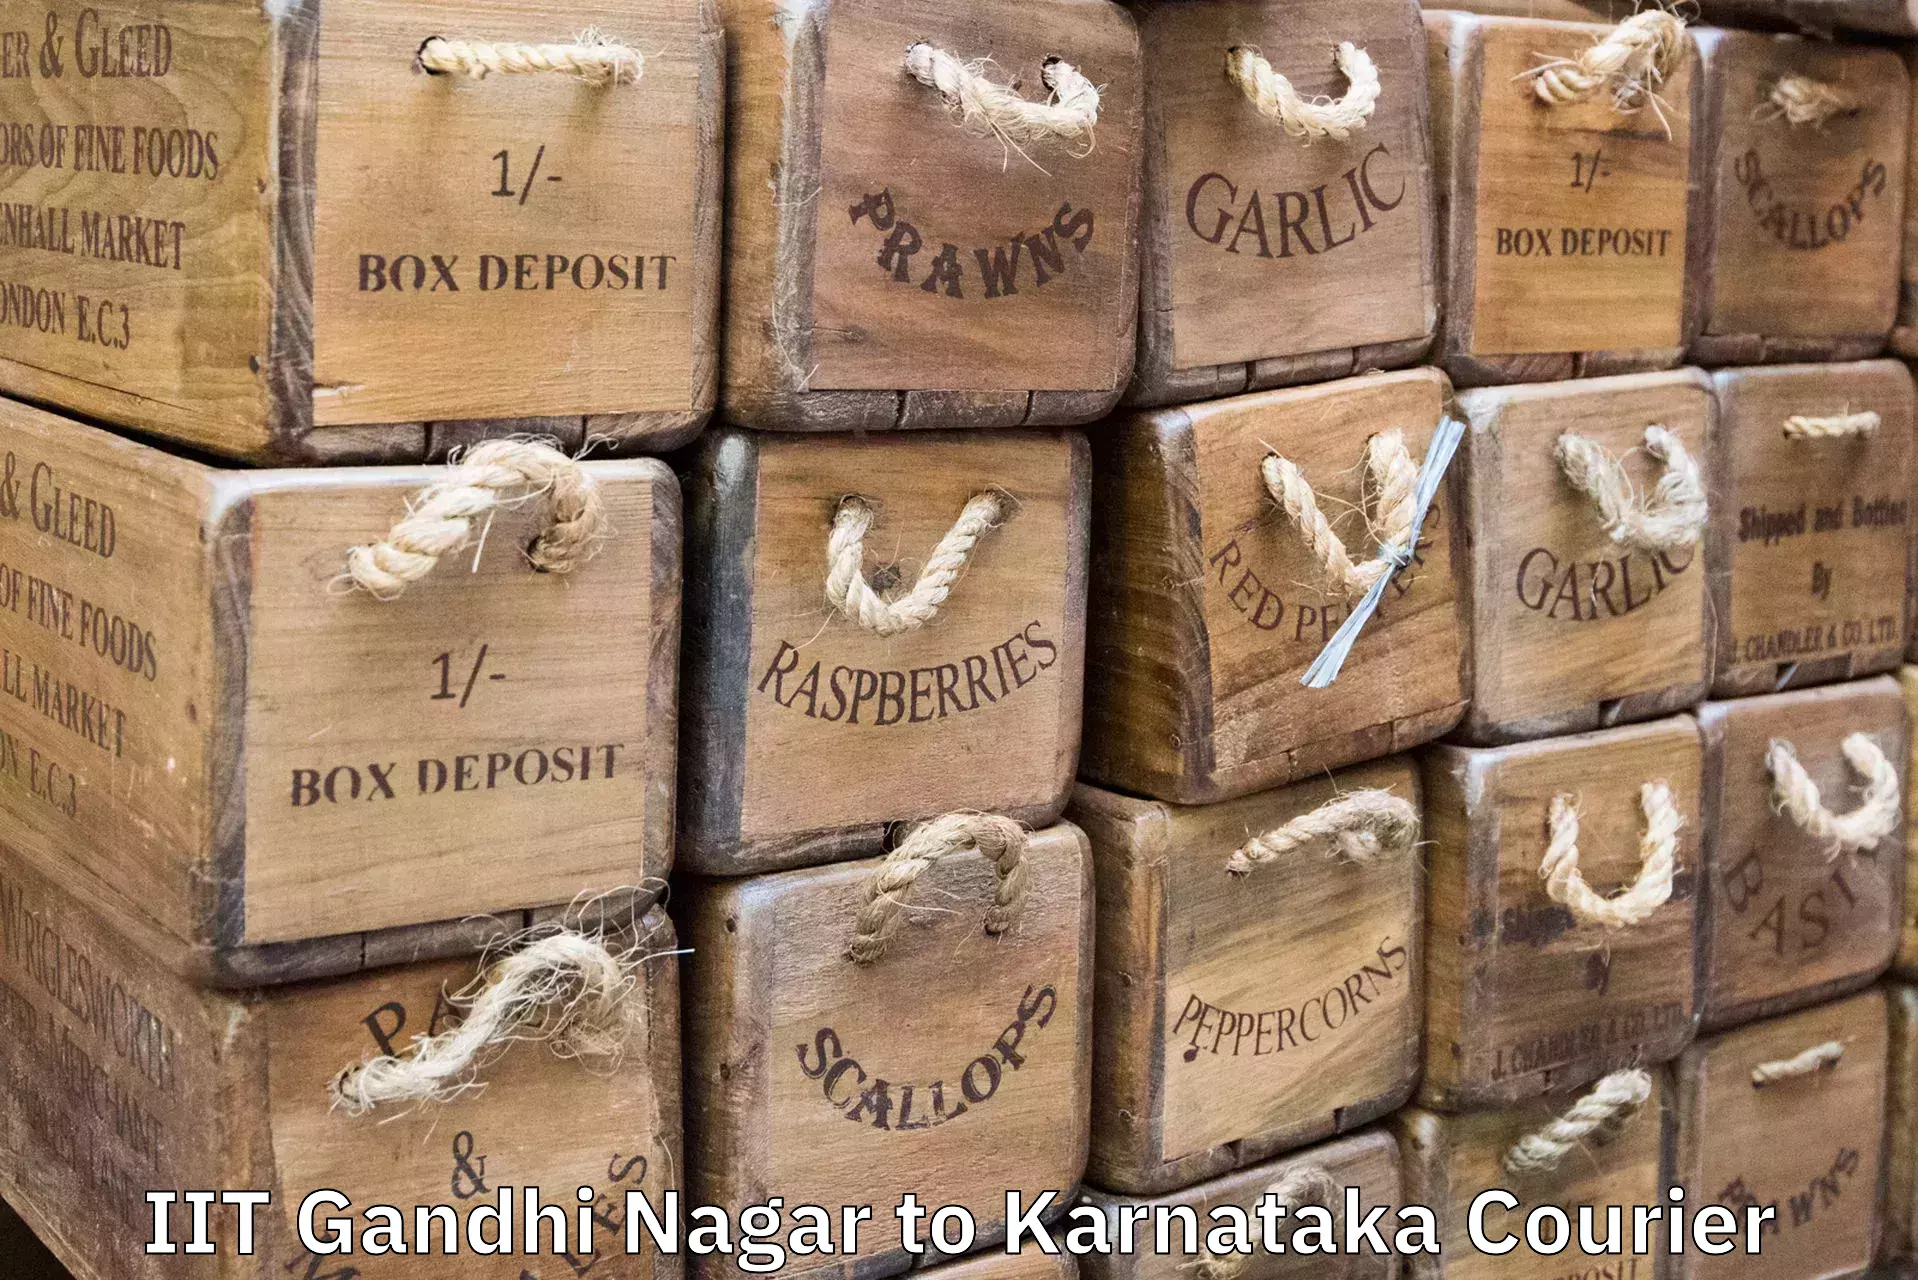 Luggage delivery system IIT Gandhi Nagar to Karnataka